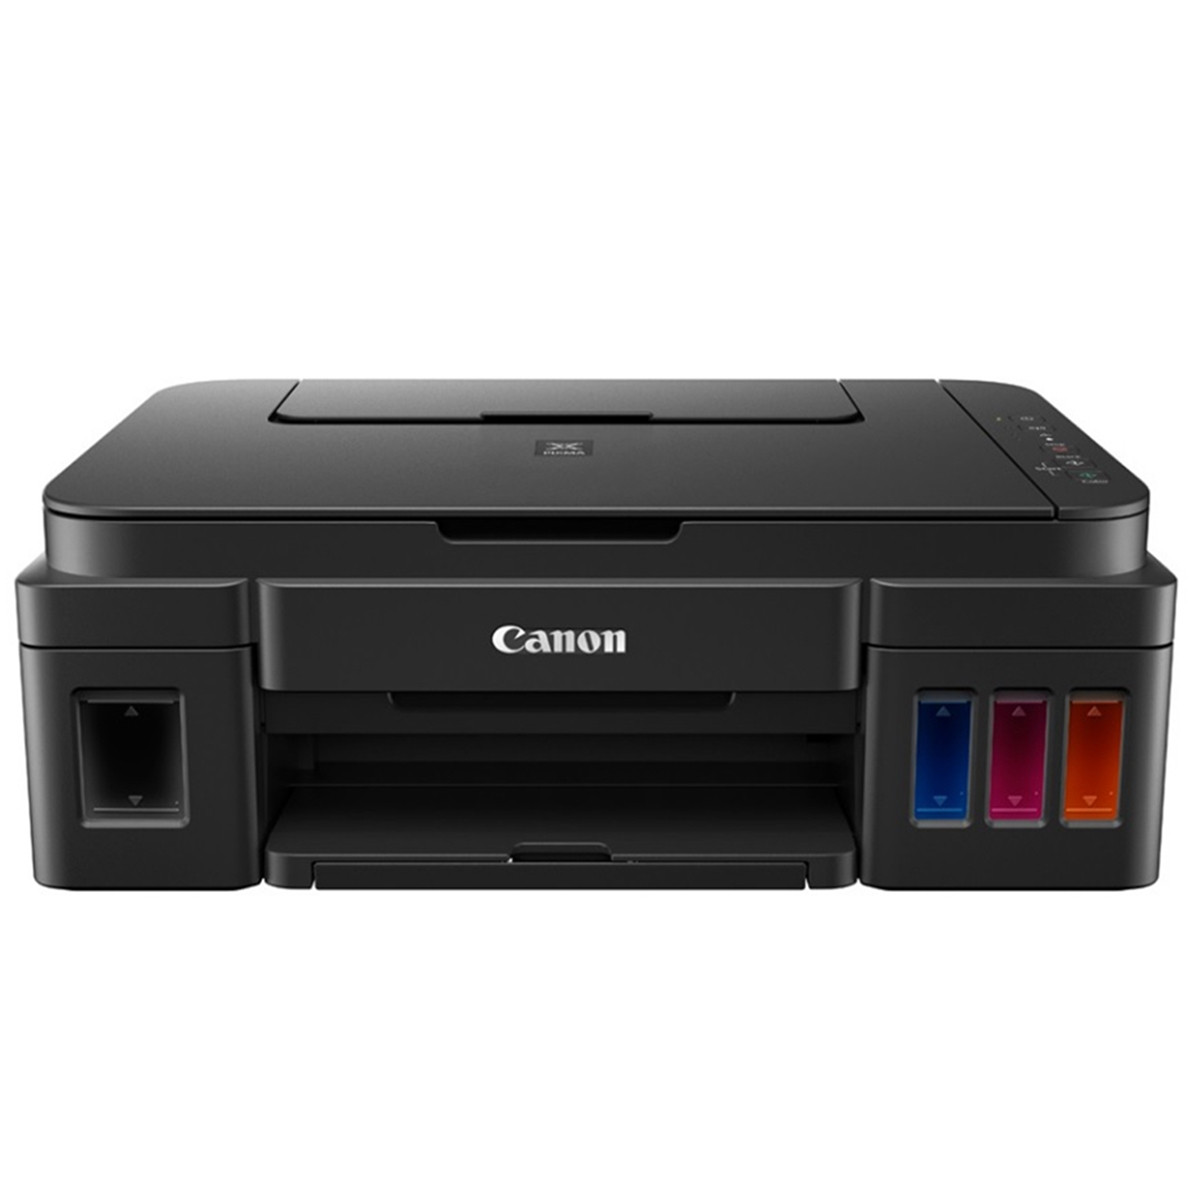 Impressora Canon Pixma Maxx G3100 G-3100 | Multifuncional Tanque de Tinta com Conexão WiFi